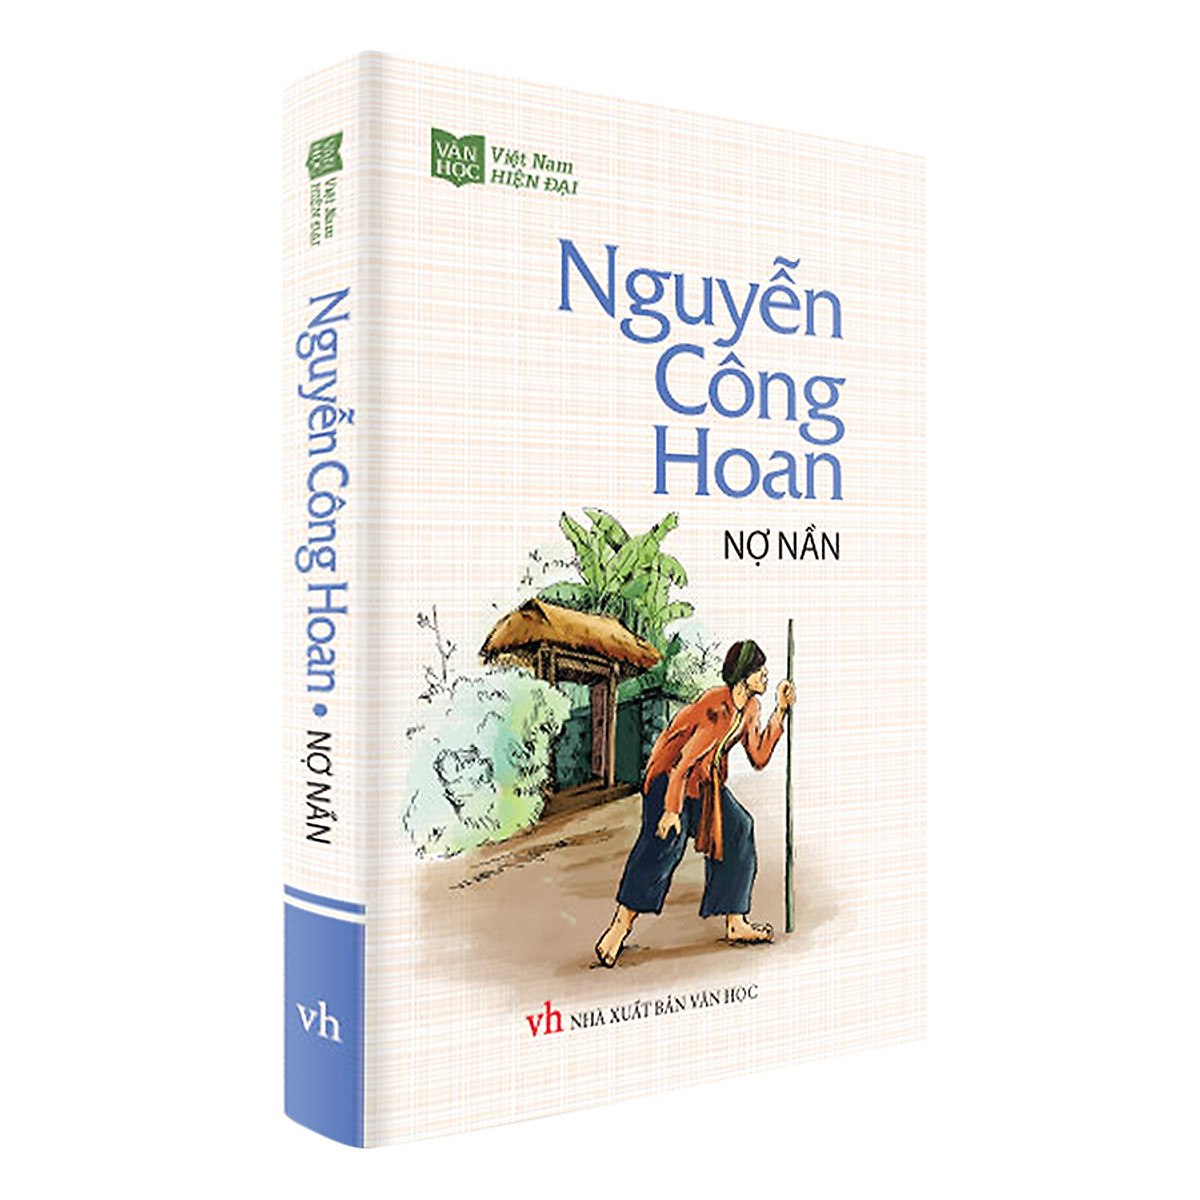 Nợ Nần - Nguyễn Công Hoan